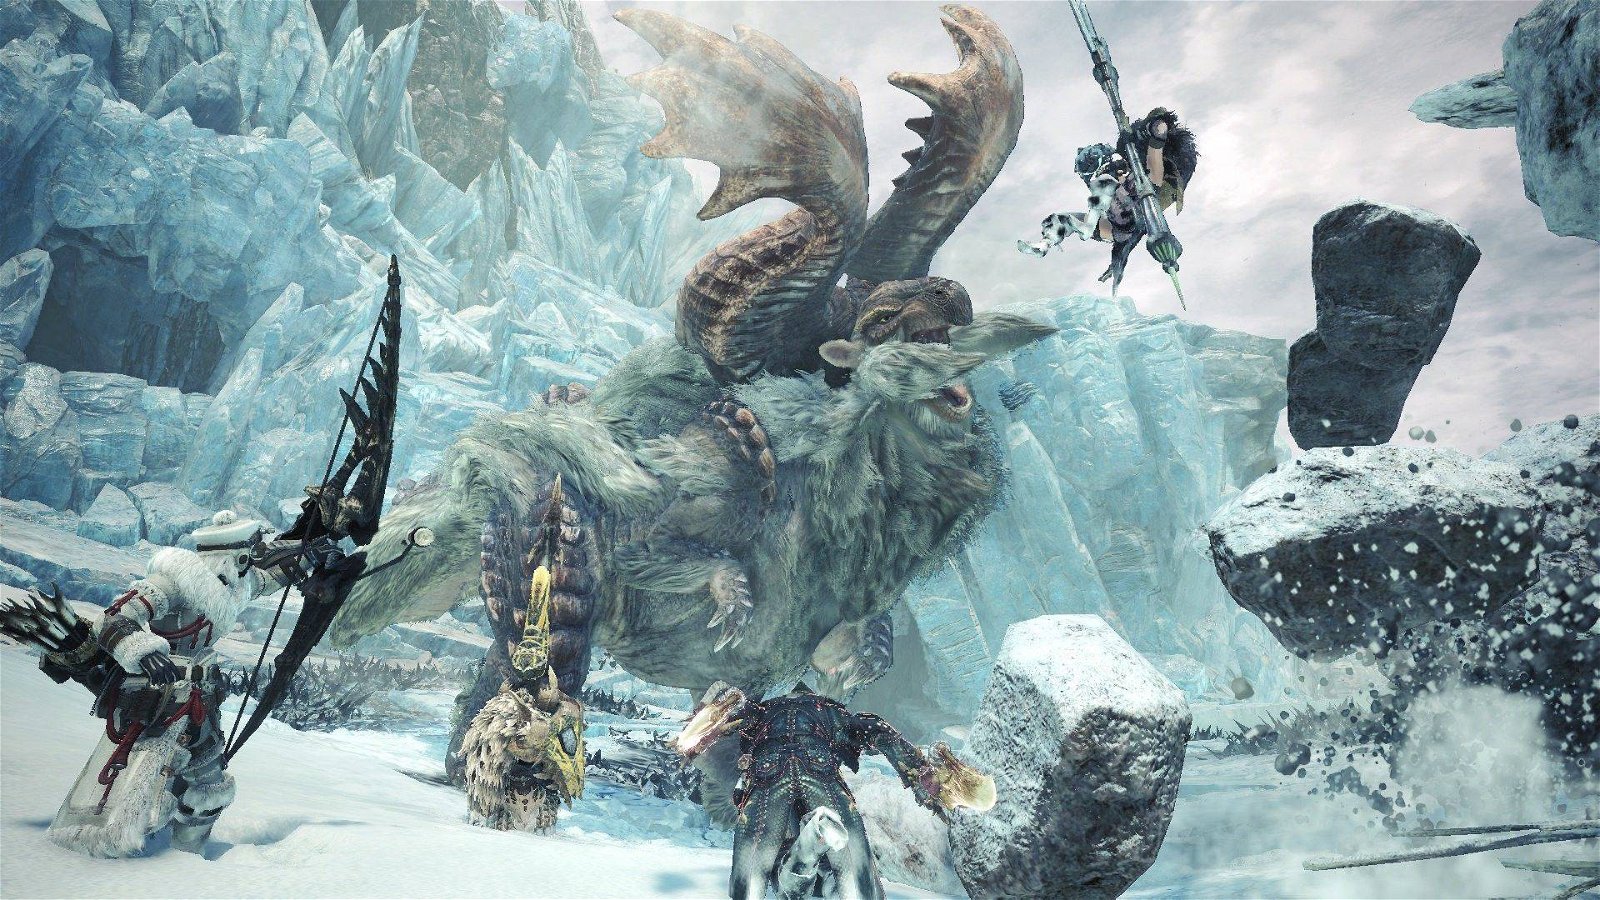 Immagine di Monster Hunter World gratis con PS Plus per i giocatori asiatici